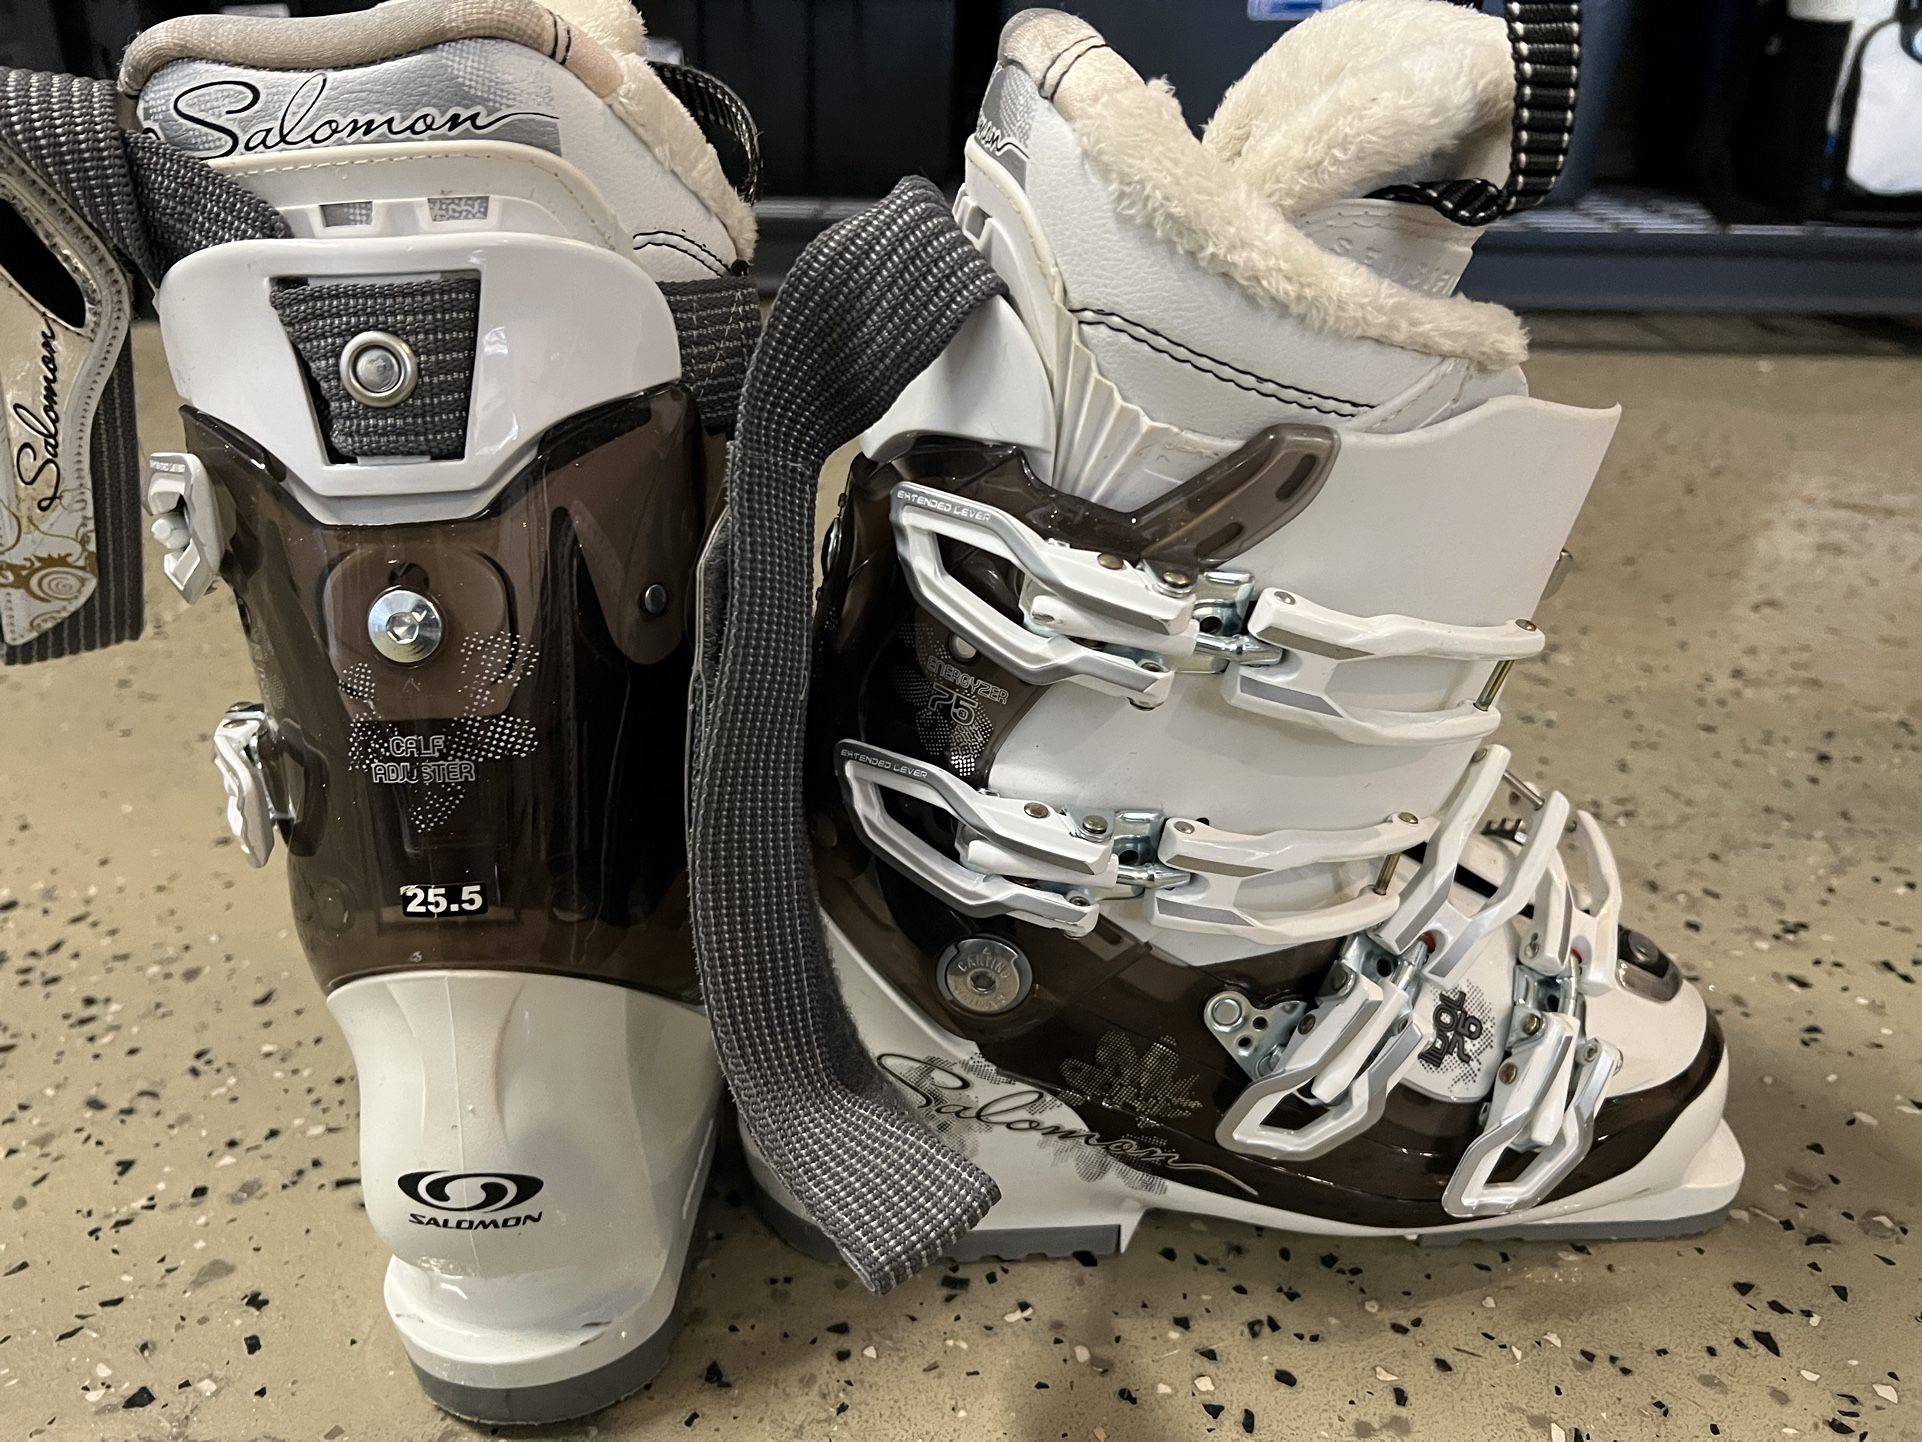 Salomon White Shrew Starlight Women Ski Boots Size 25.5